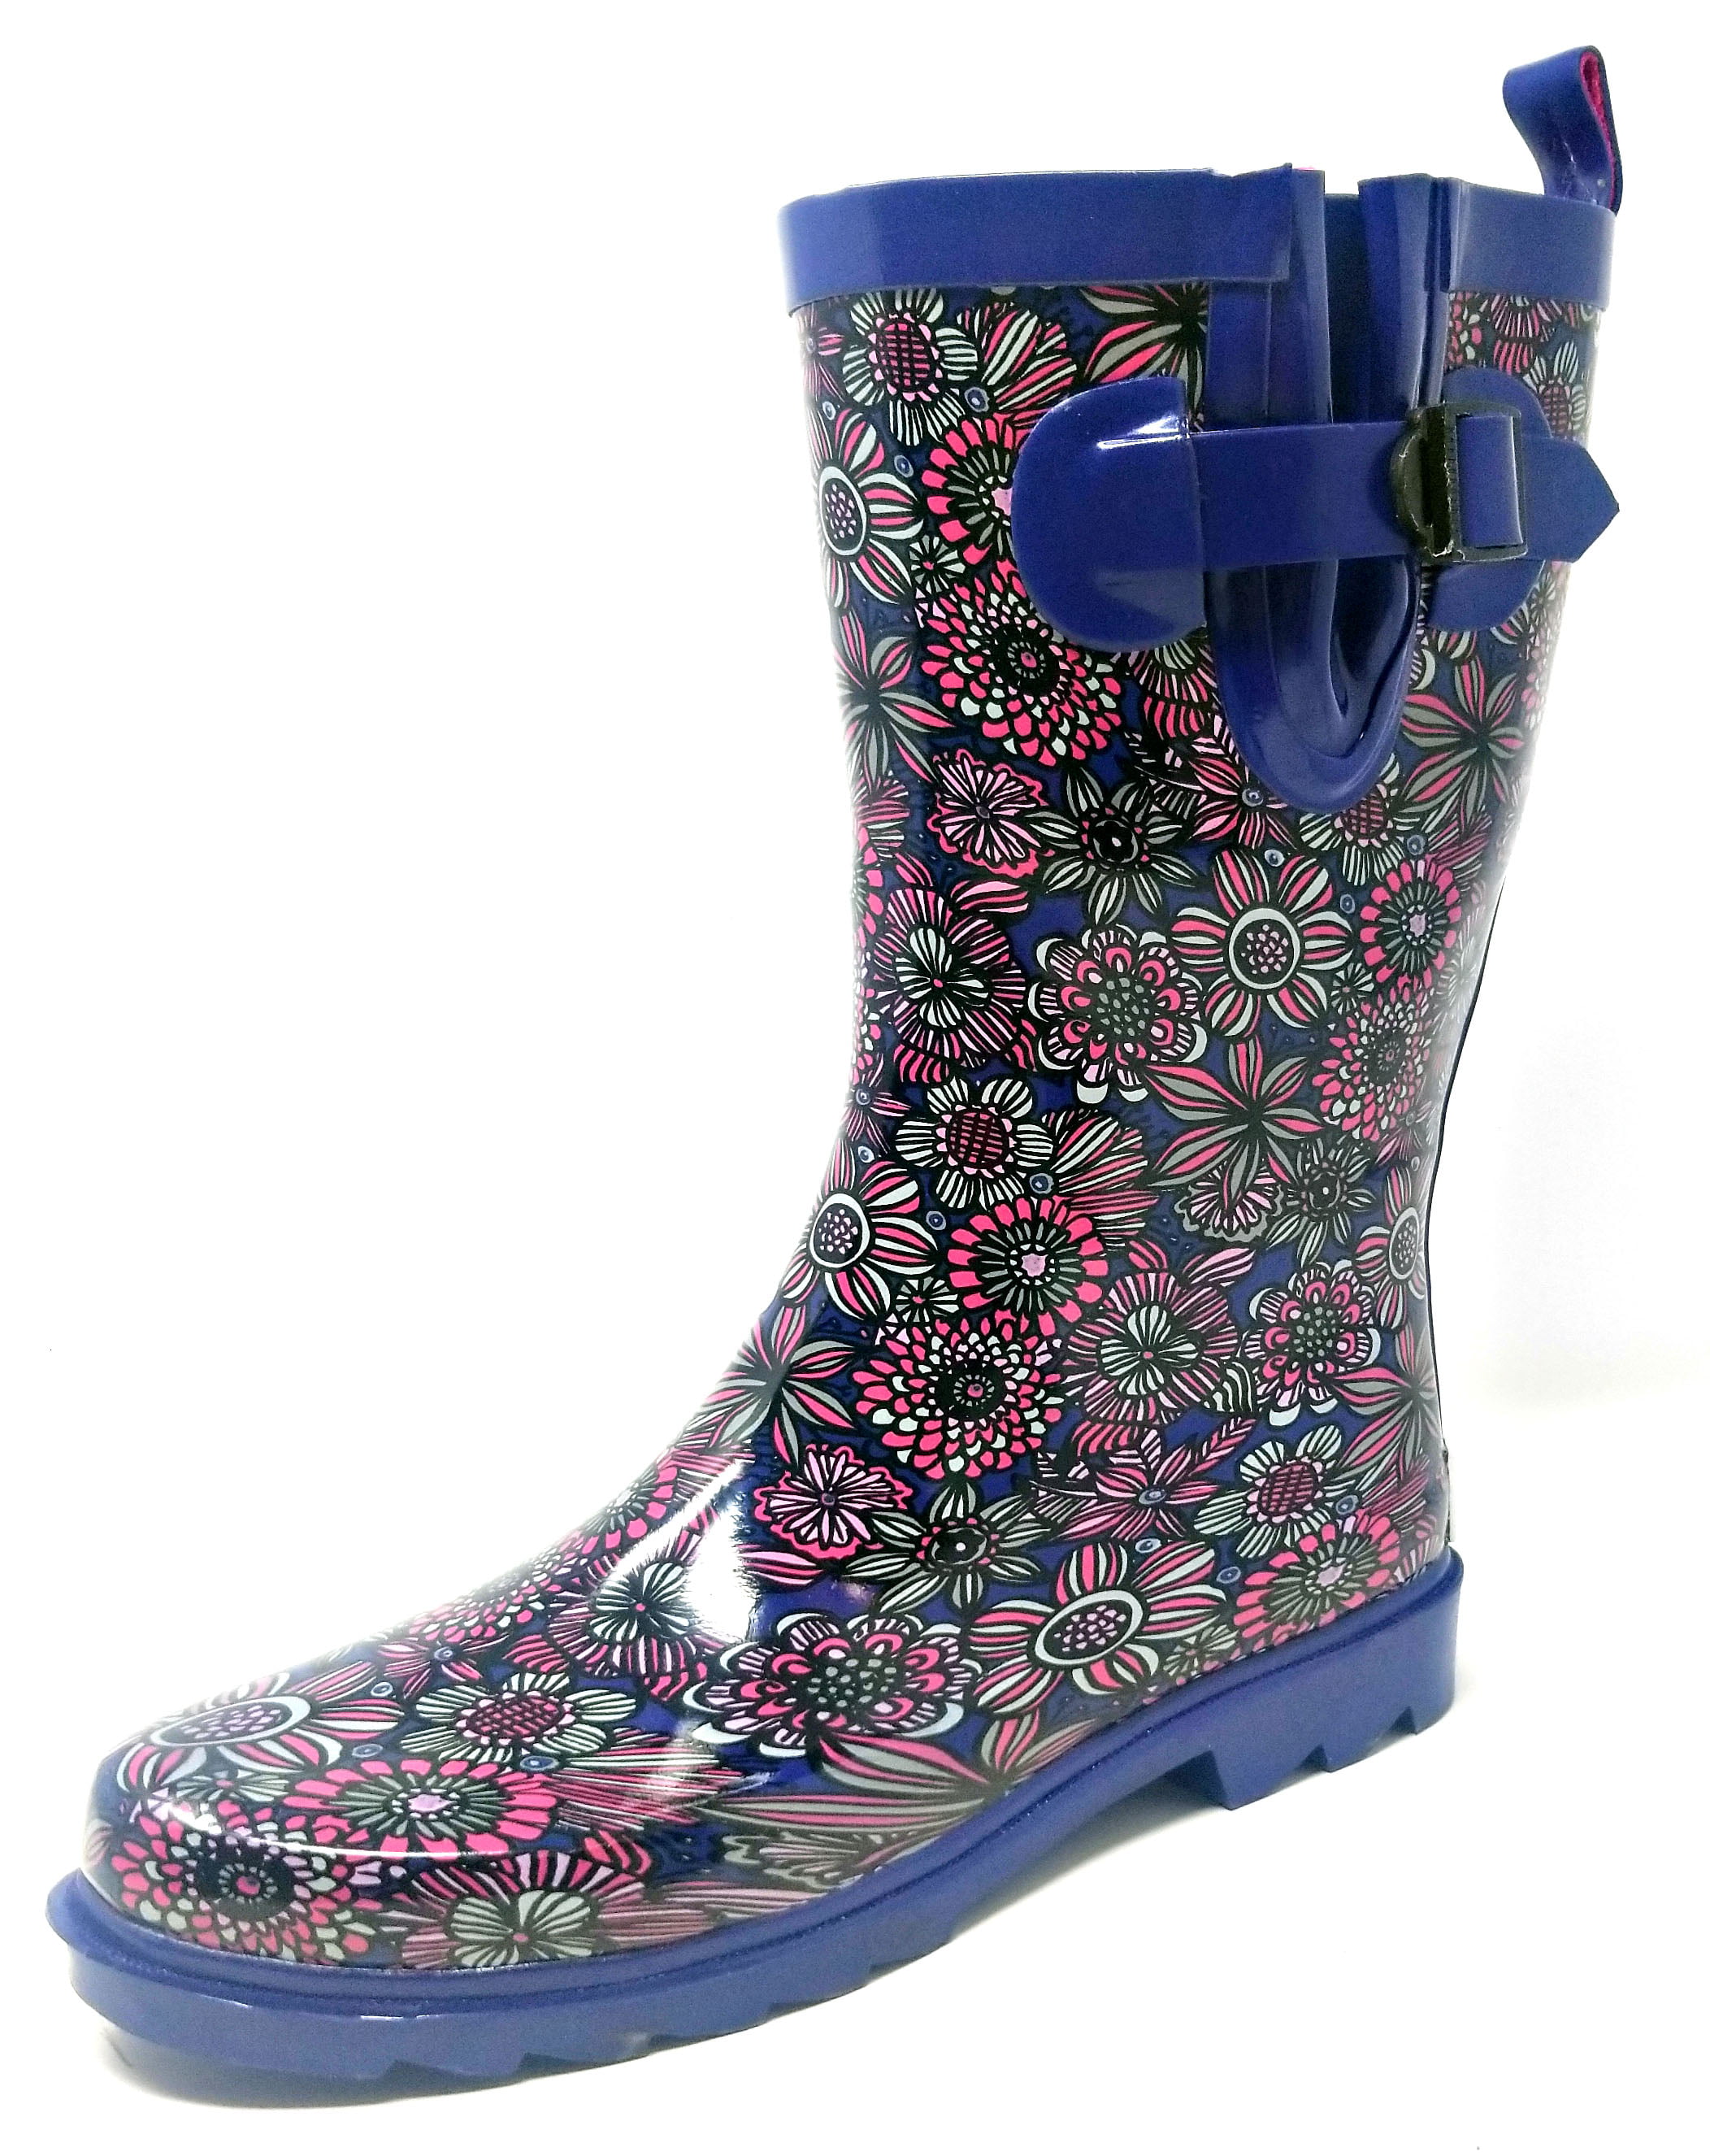 Women Rubber Rain Boots 11 Mid Calf Waterproof Garden Boots Blue Flowers Print